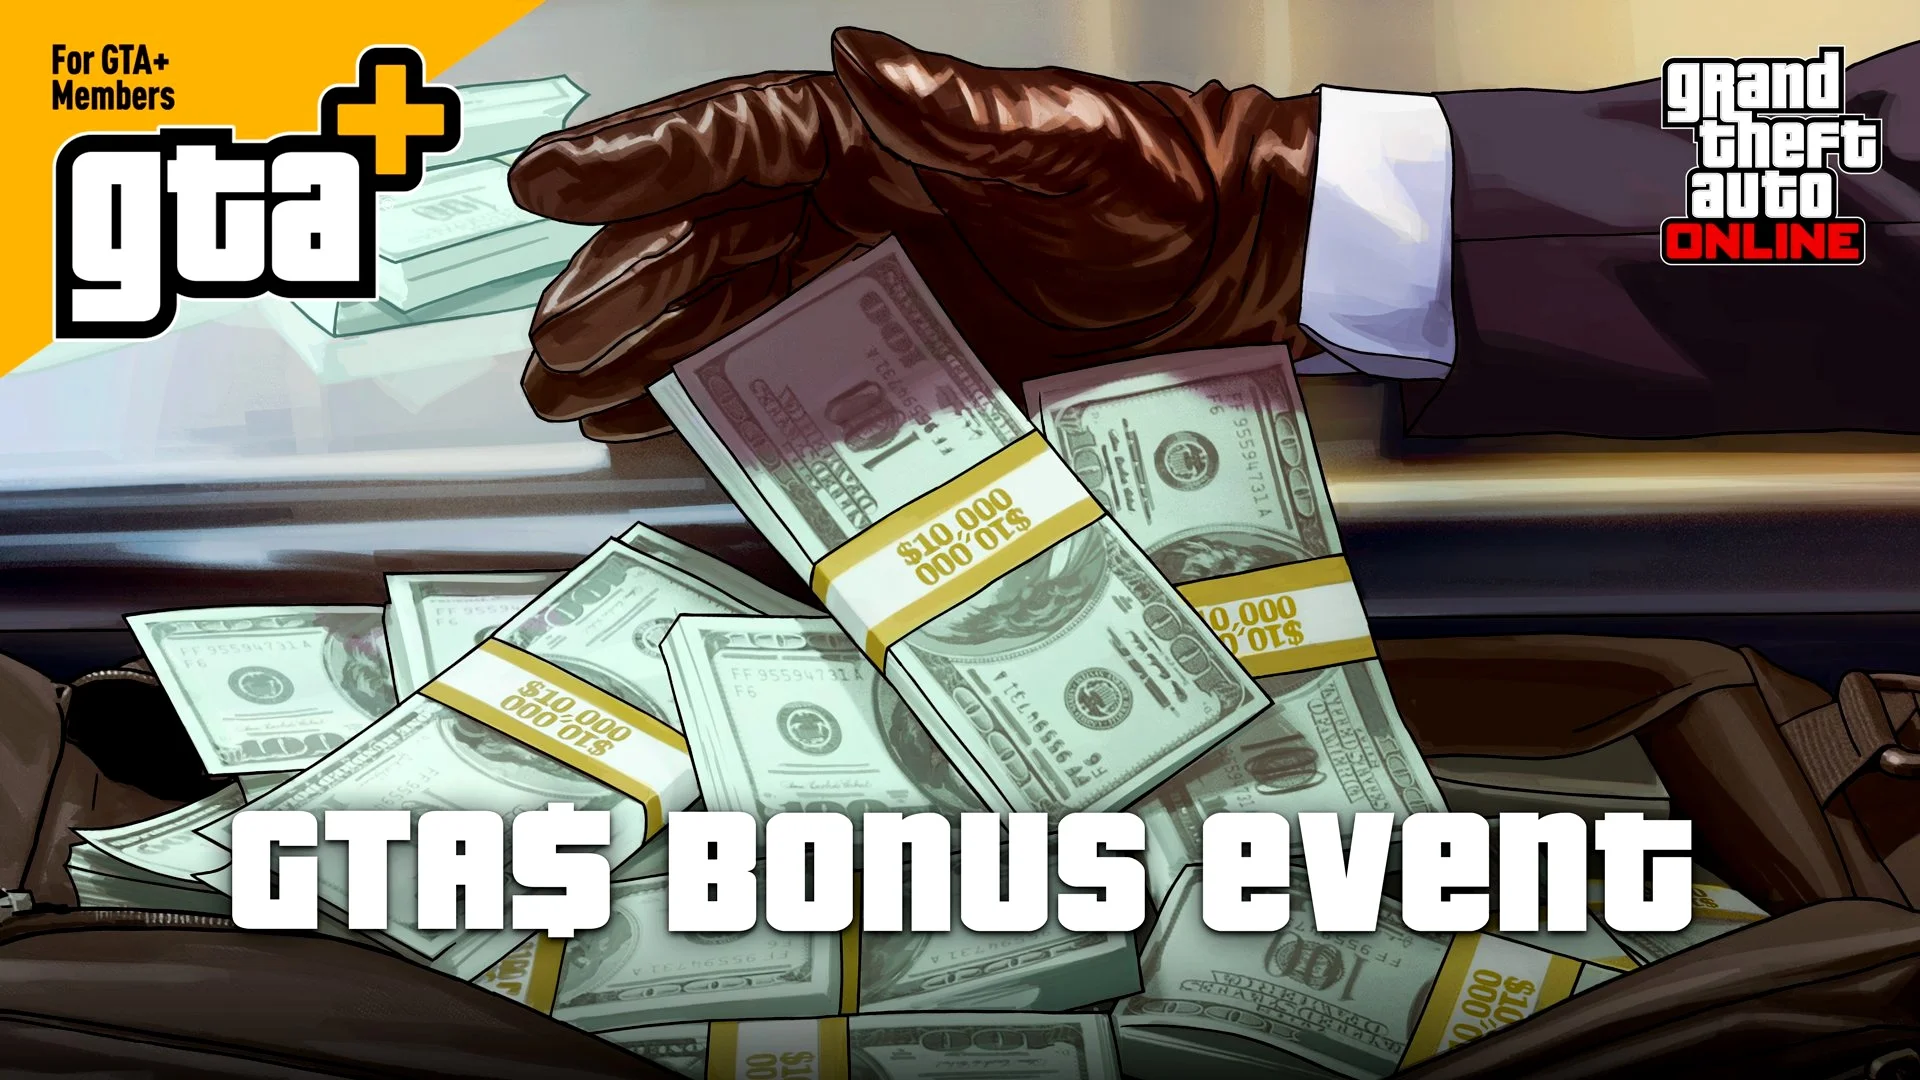 Подписчикам GTA Plus раздадут 5 млн внутриигровых долларов в GTA Online - фото 1